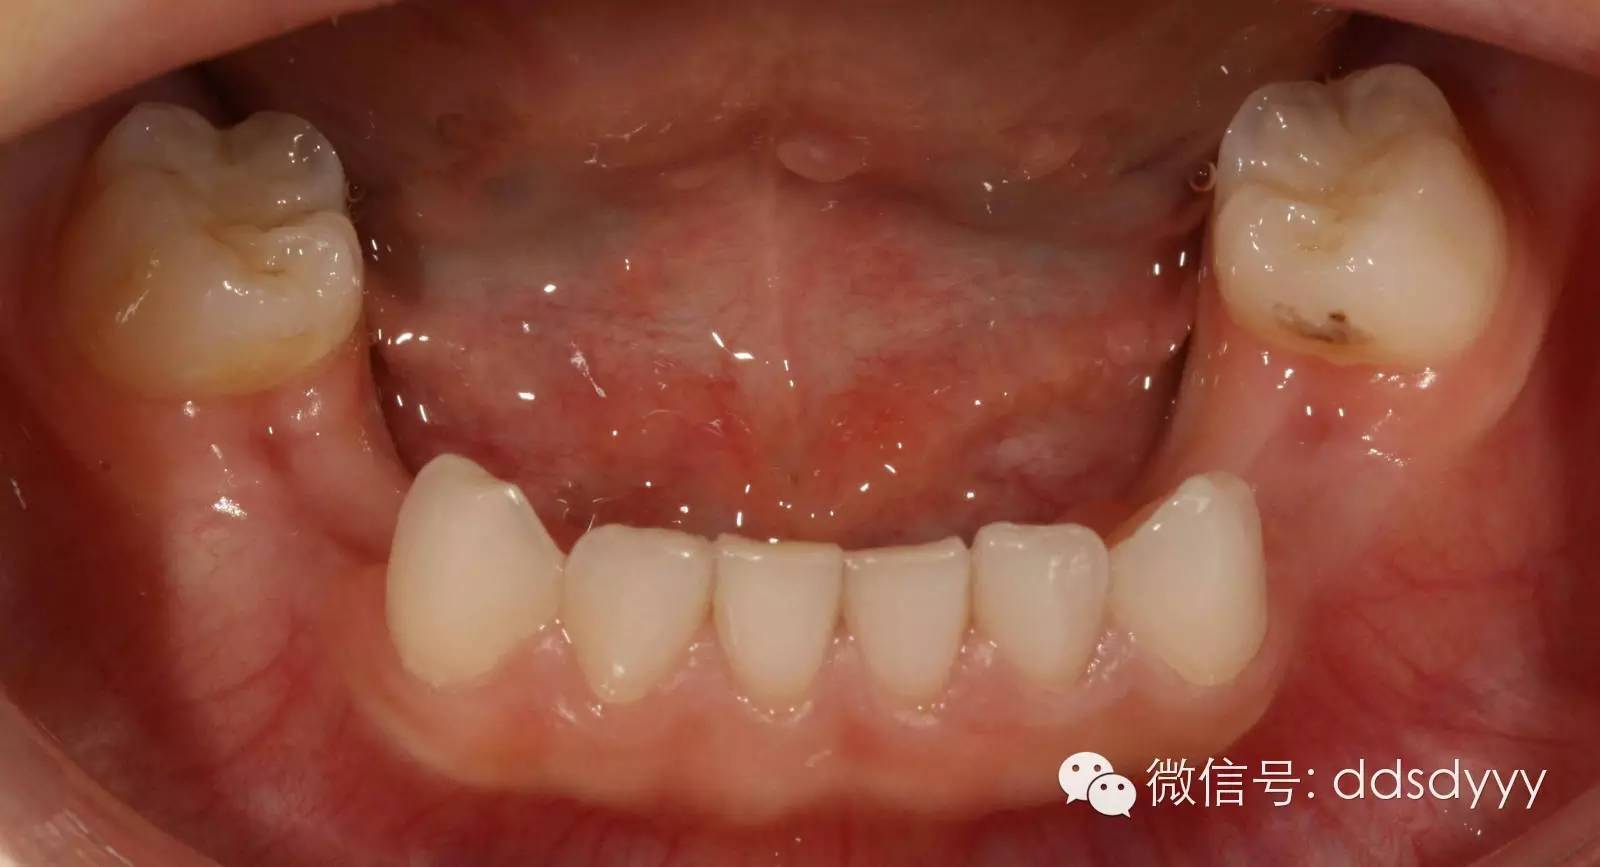 越早看医生越好!12岁前应该处理的20种儿童牙颌畸形